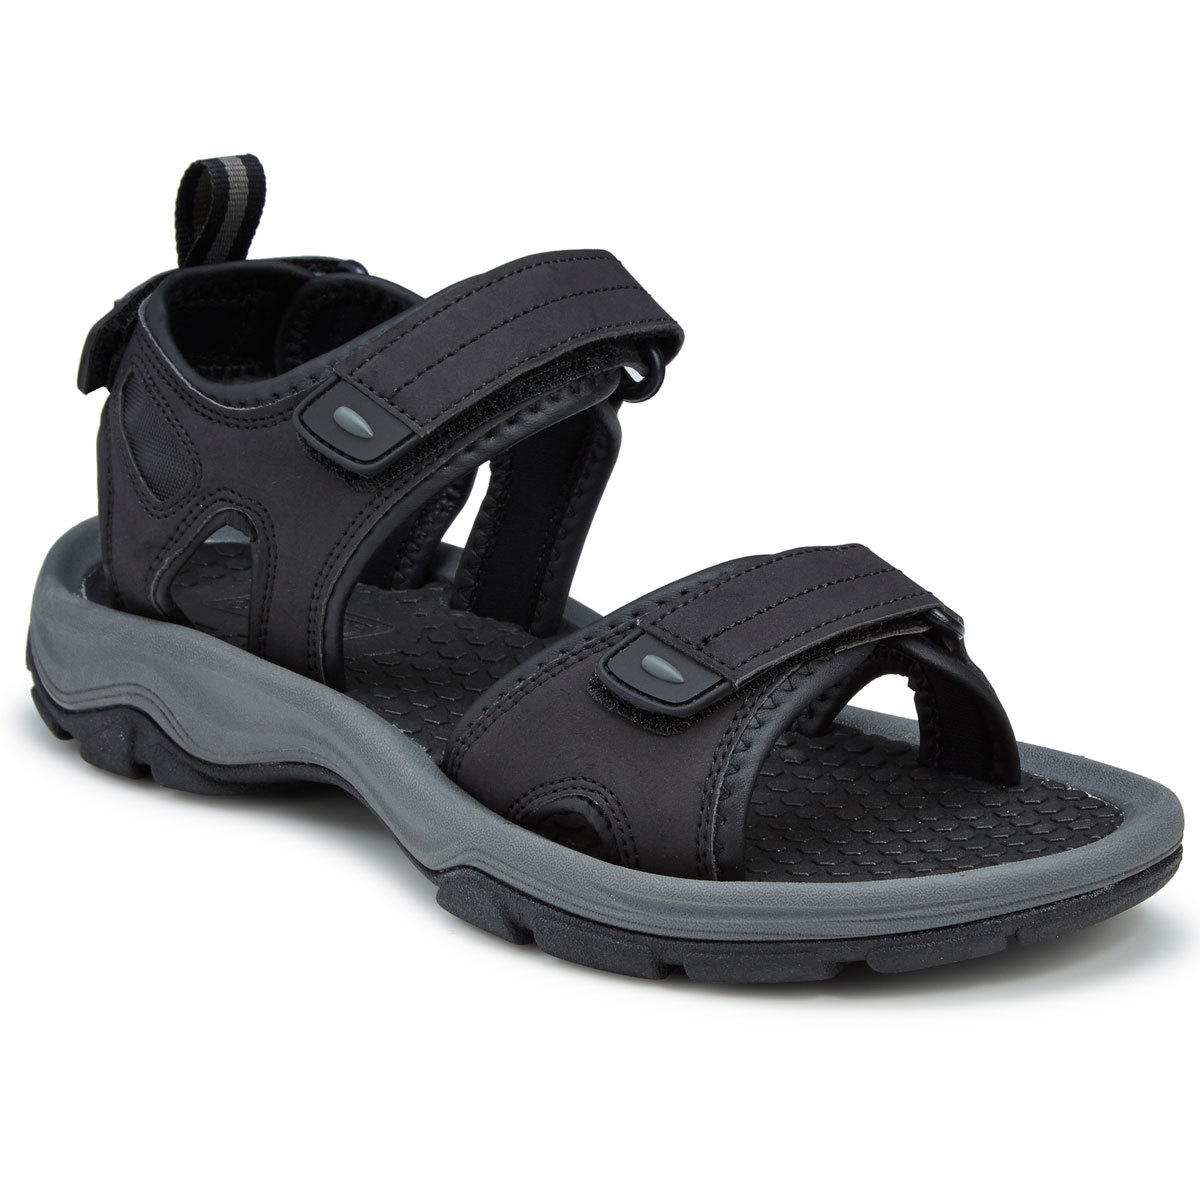 men's river sandals